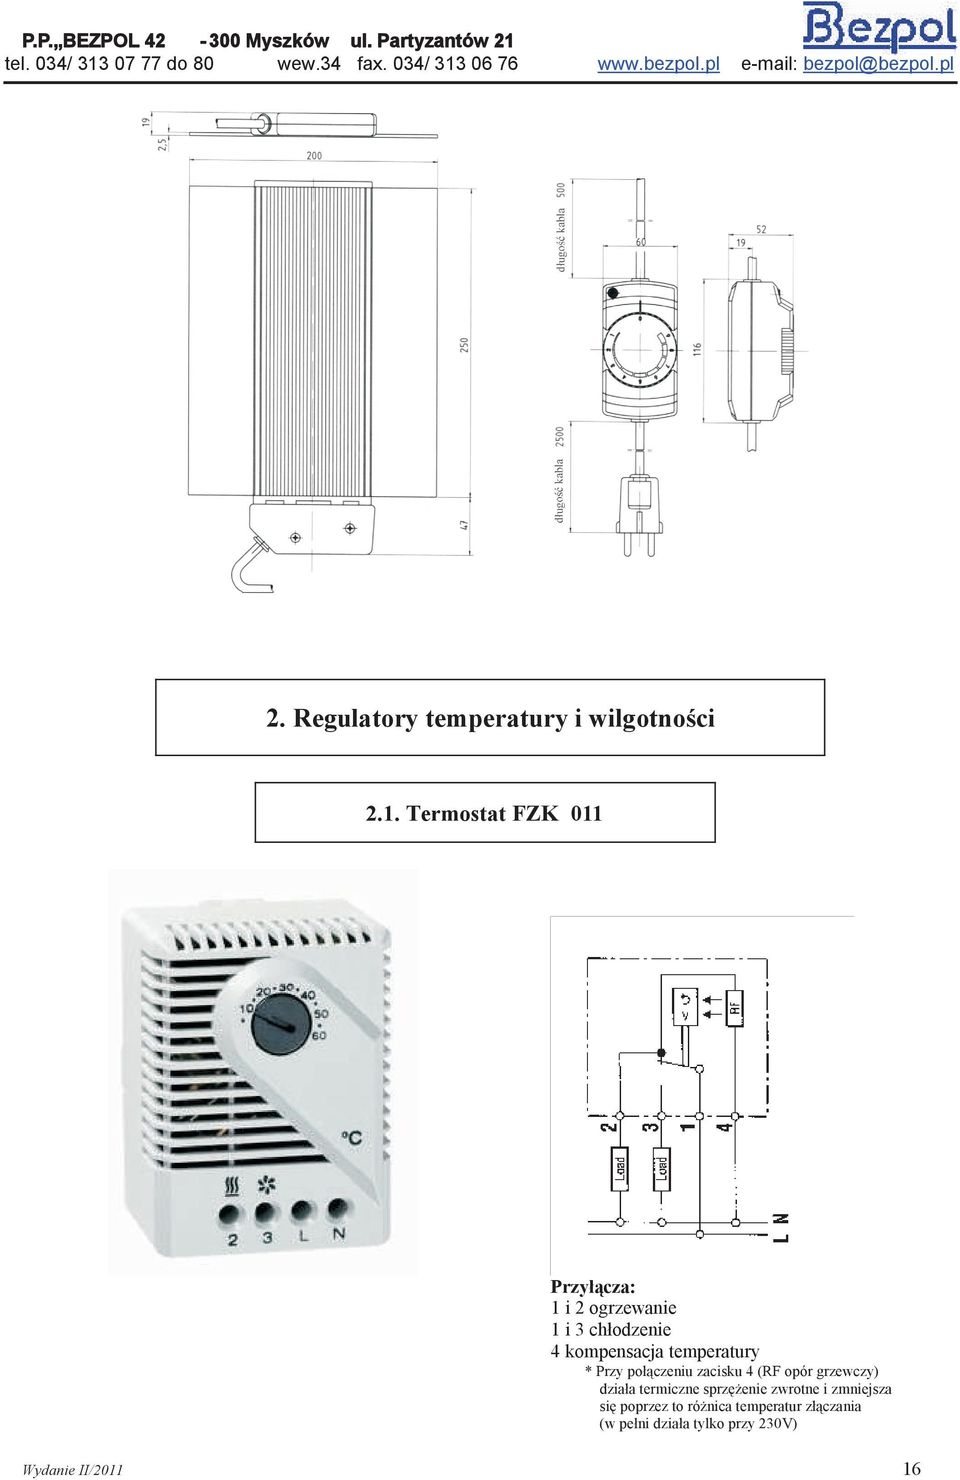 temperatury * Przy połączeniu zacisku 4 (RF opór grzewczy) działa termiczne